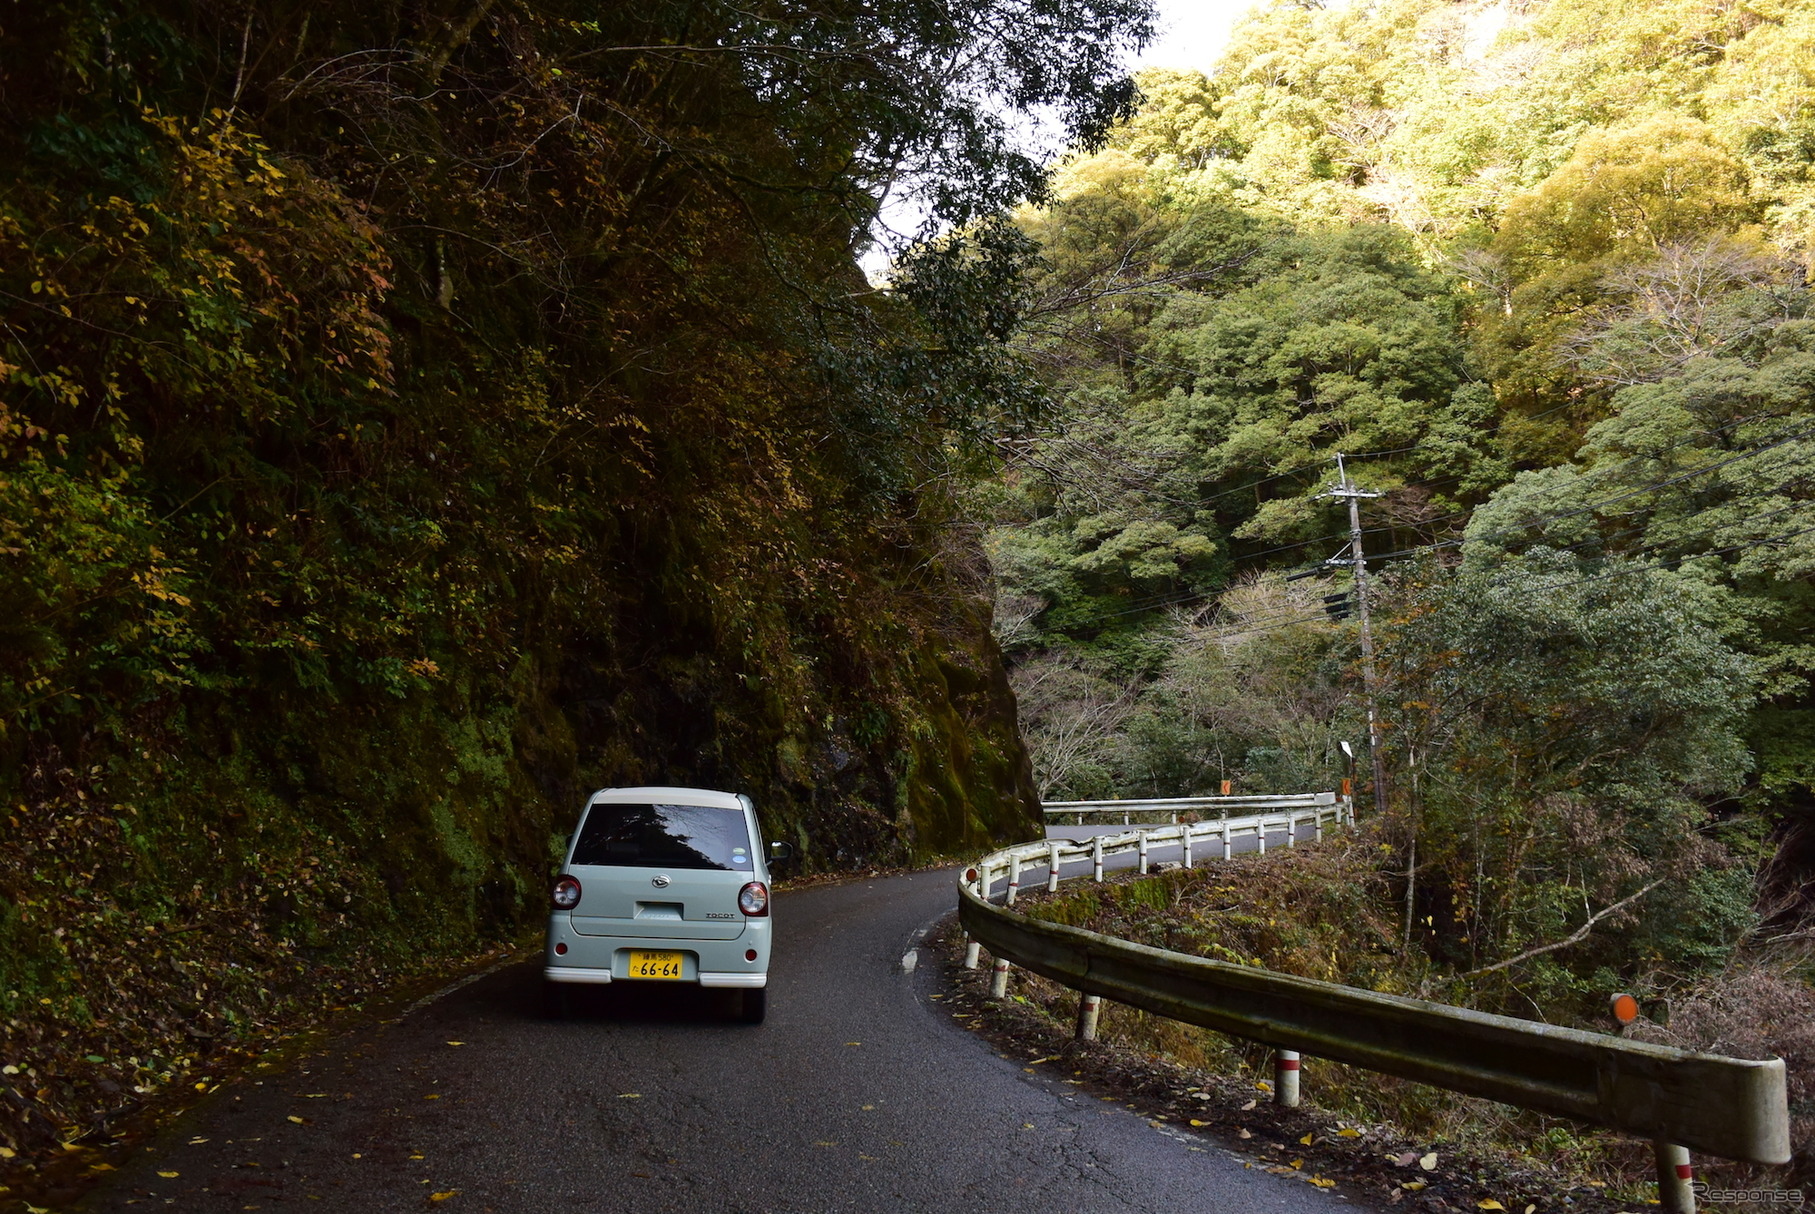 道路整備が進む九州山地だが、サブルートに入ると途端に隘路だらけ。だが、そういうルートに限って景色が素敵だったりするから悩ましい。意外なほど荒れ道に強かったトコットなら恐るるに足らずである。